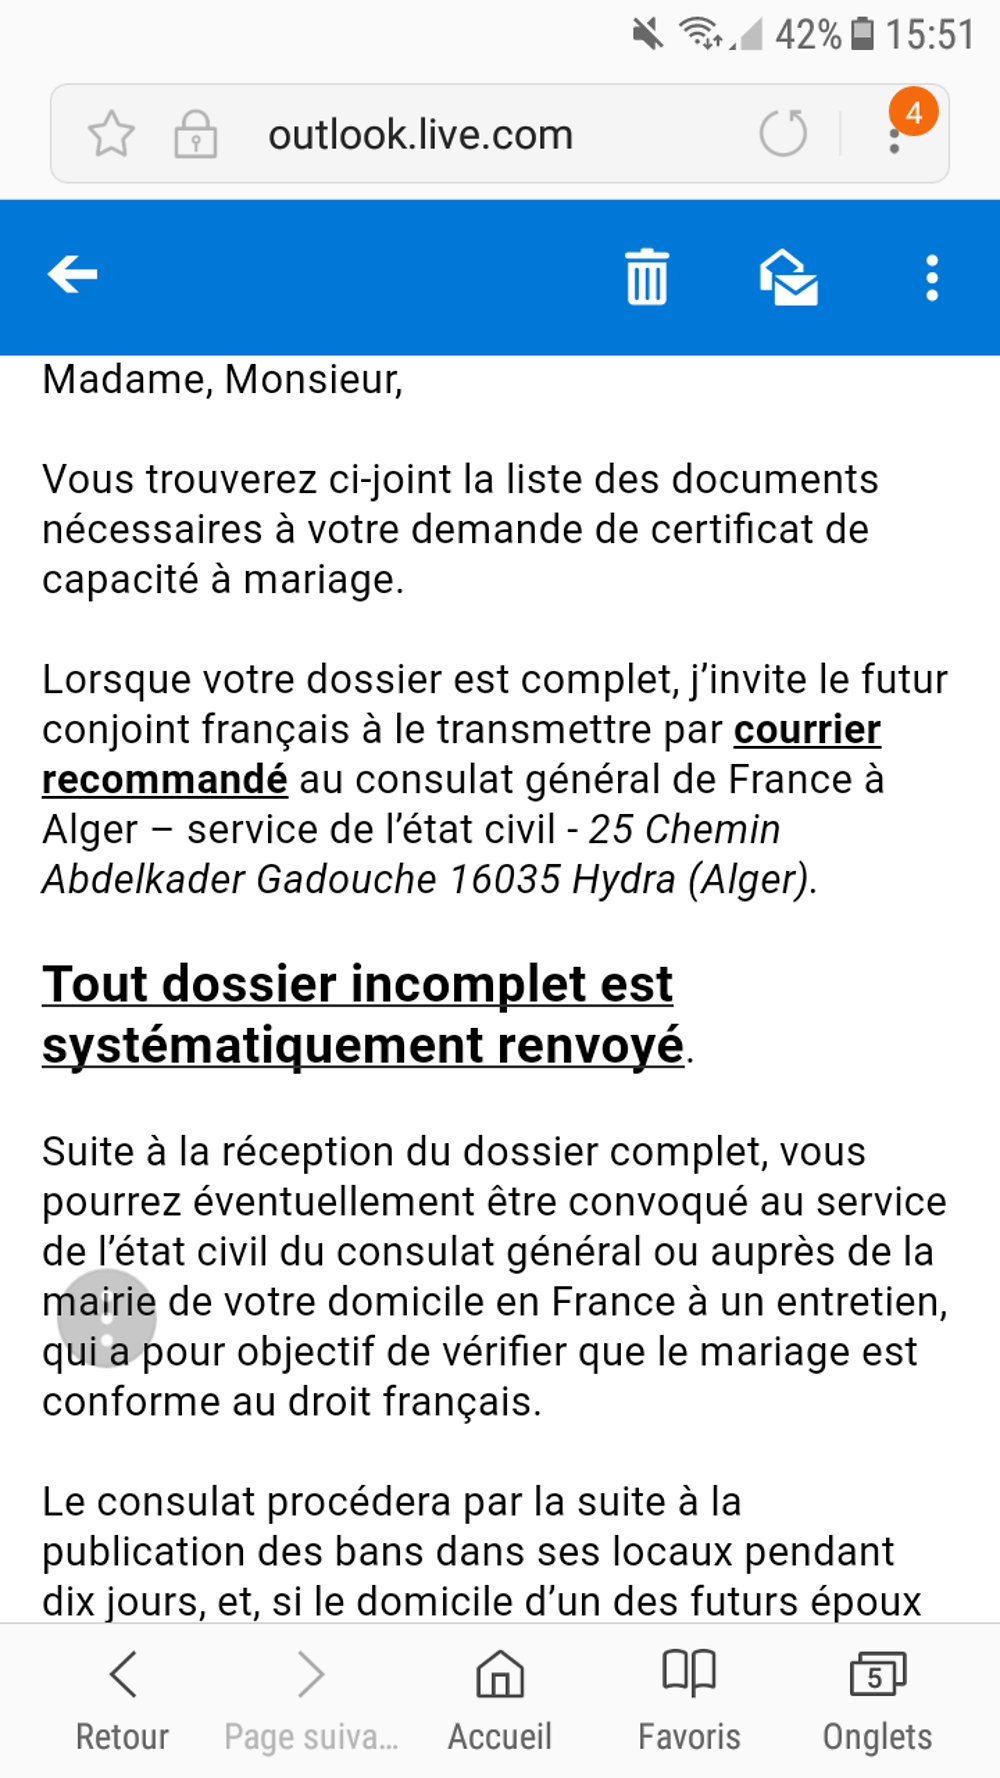 Re: Certificat de capacité à mariage (ccam) - formalités pour se marier en Algerie - Chouchou3907